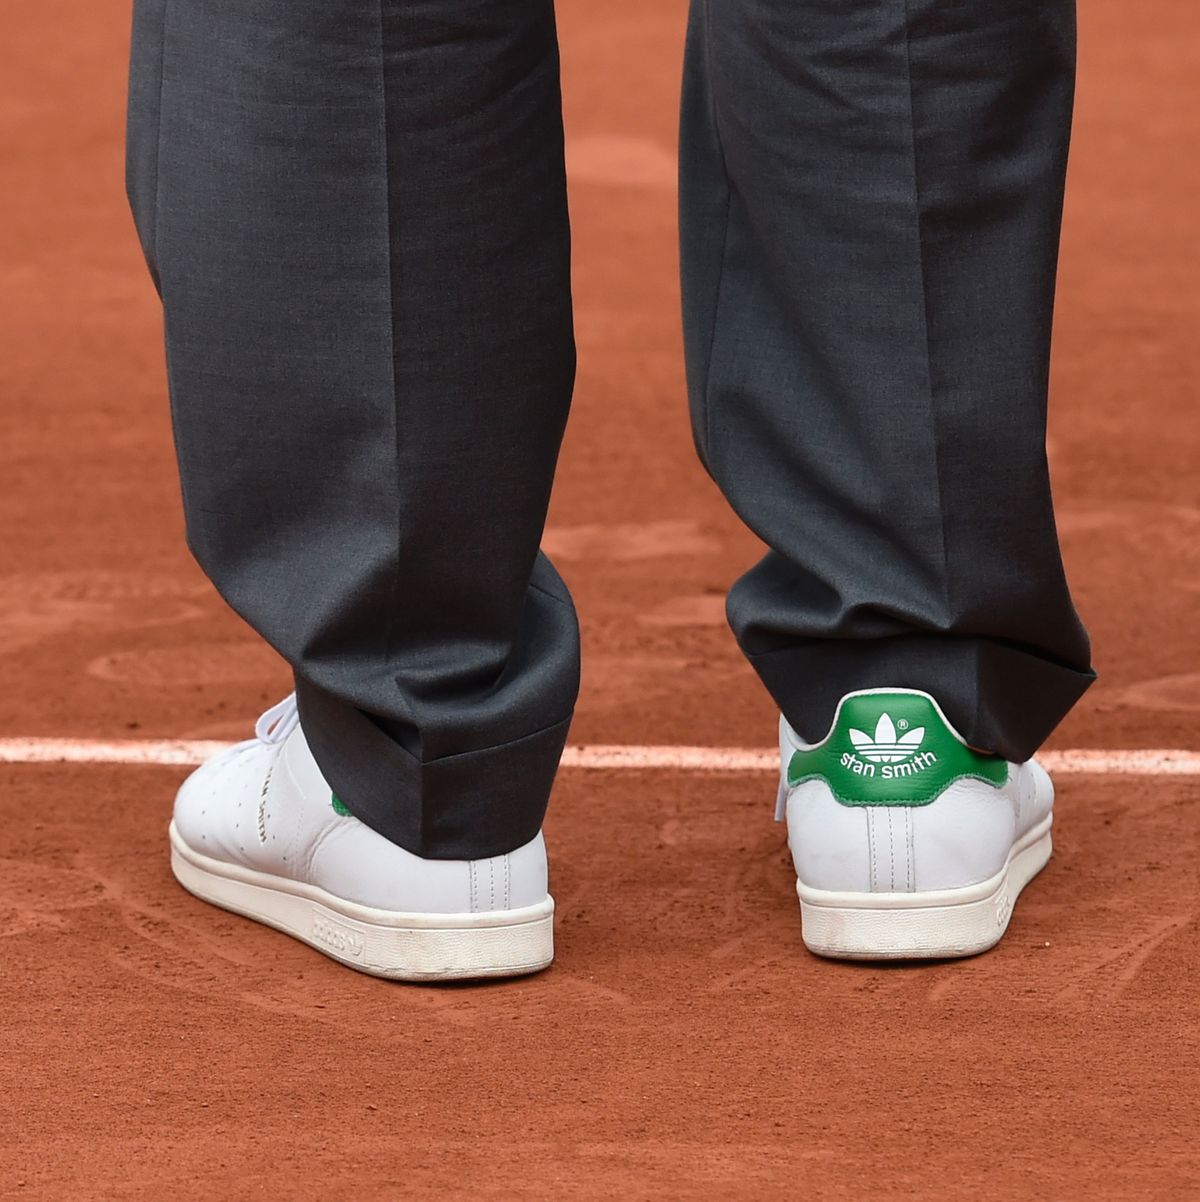 Tenis Adidas Stan Smith: cómo combinarlos y por qué están en tendencia